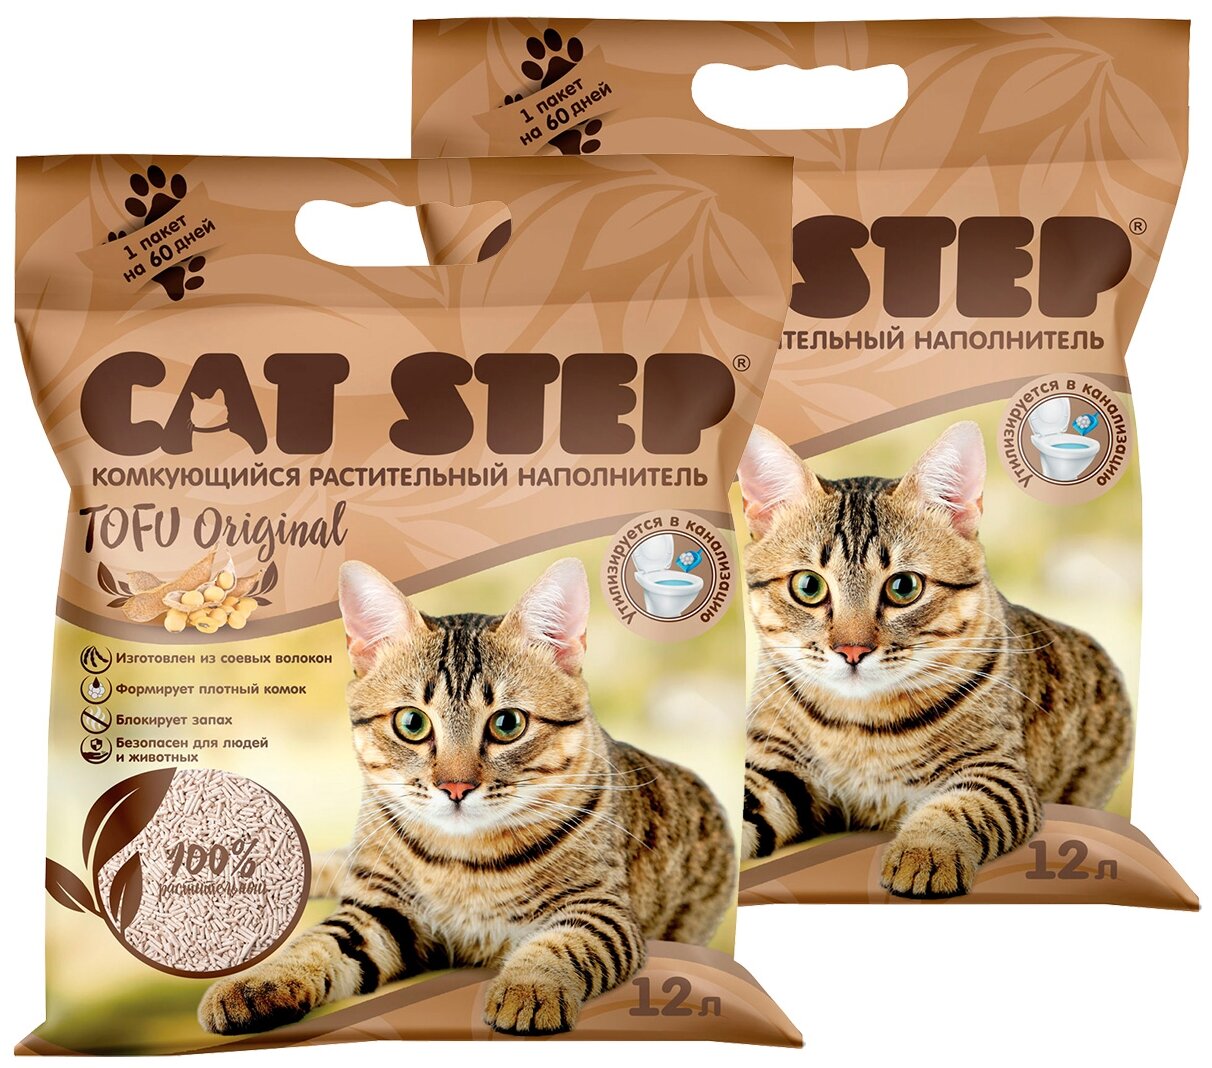 CAT STEP TOFU ORIGINAL - Кэт степ наполнитель комкующийся для туалета кошек (12 + 12 л)